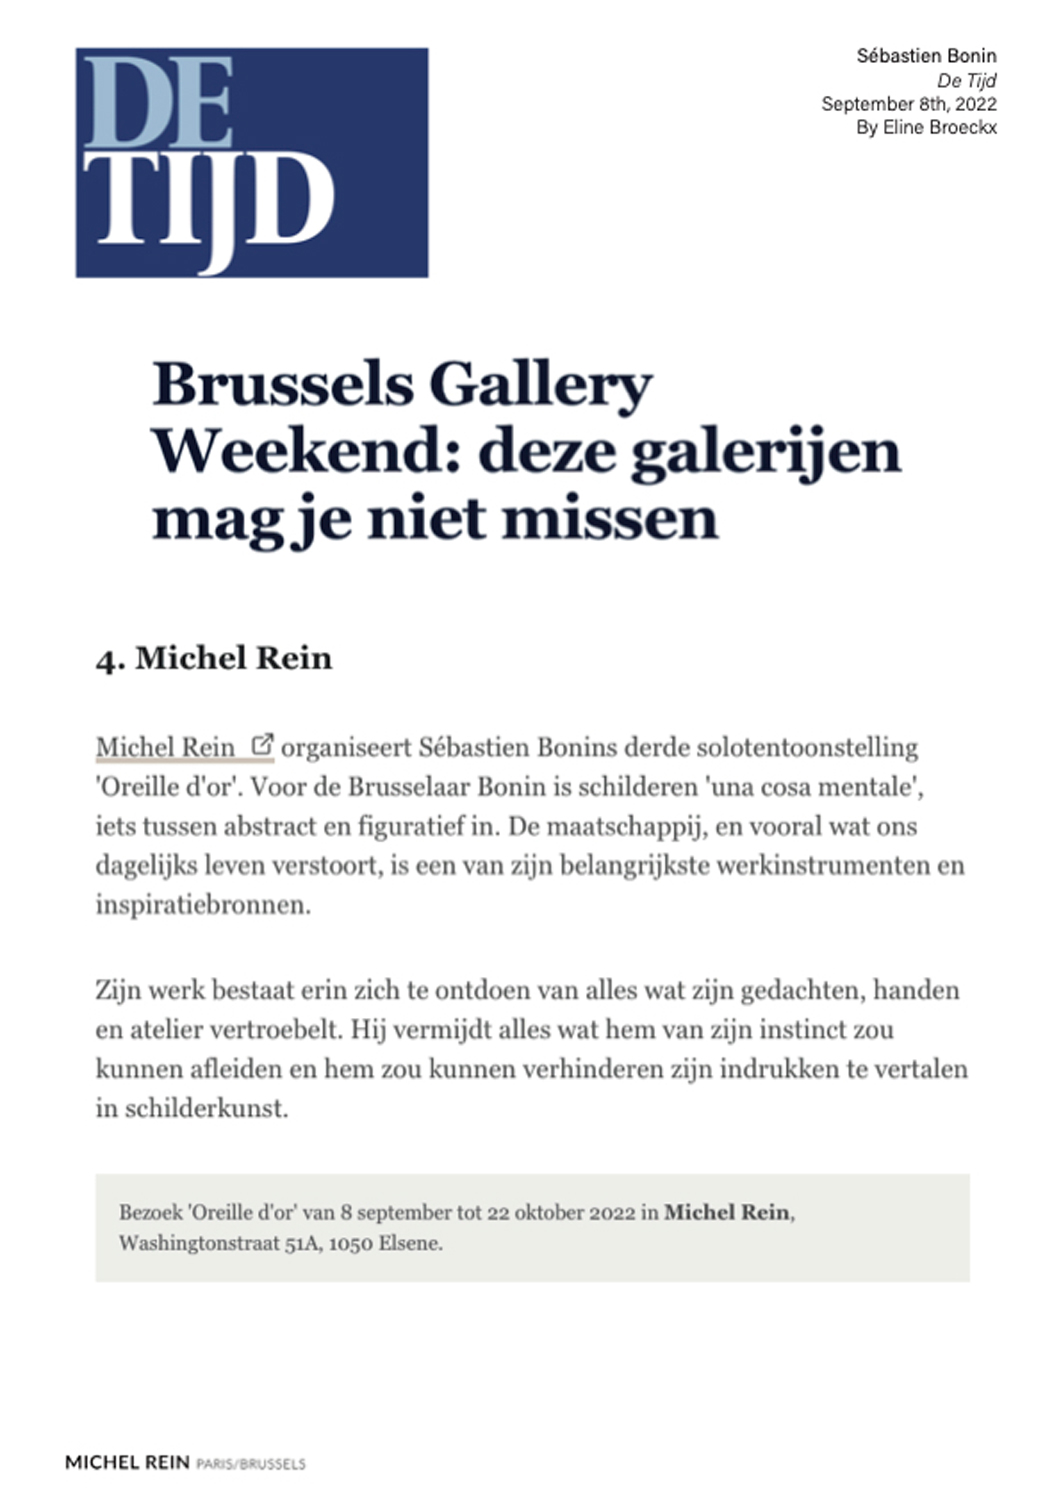 Brussels Gallery Weekend : deze galerijen mag je niet missen - De Tijd